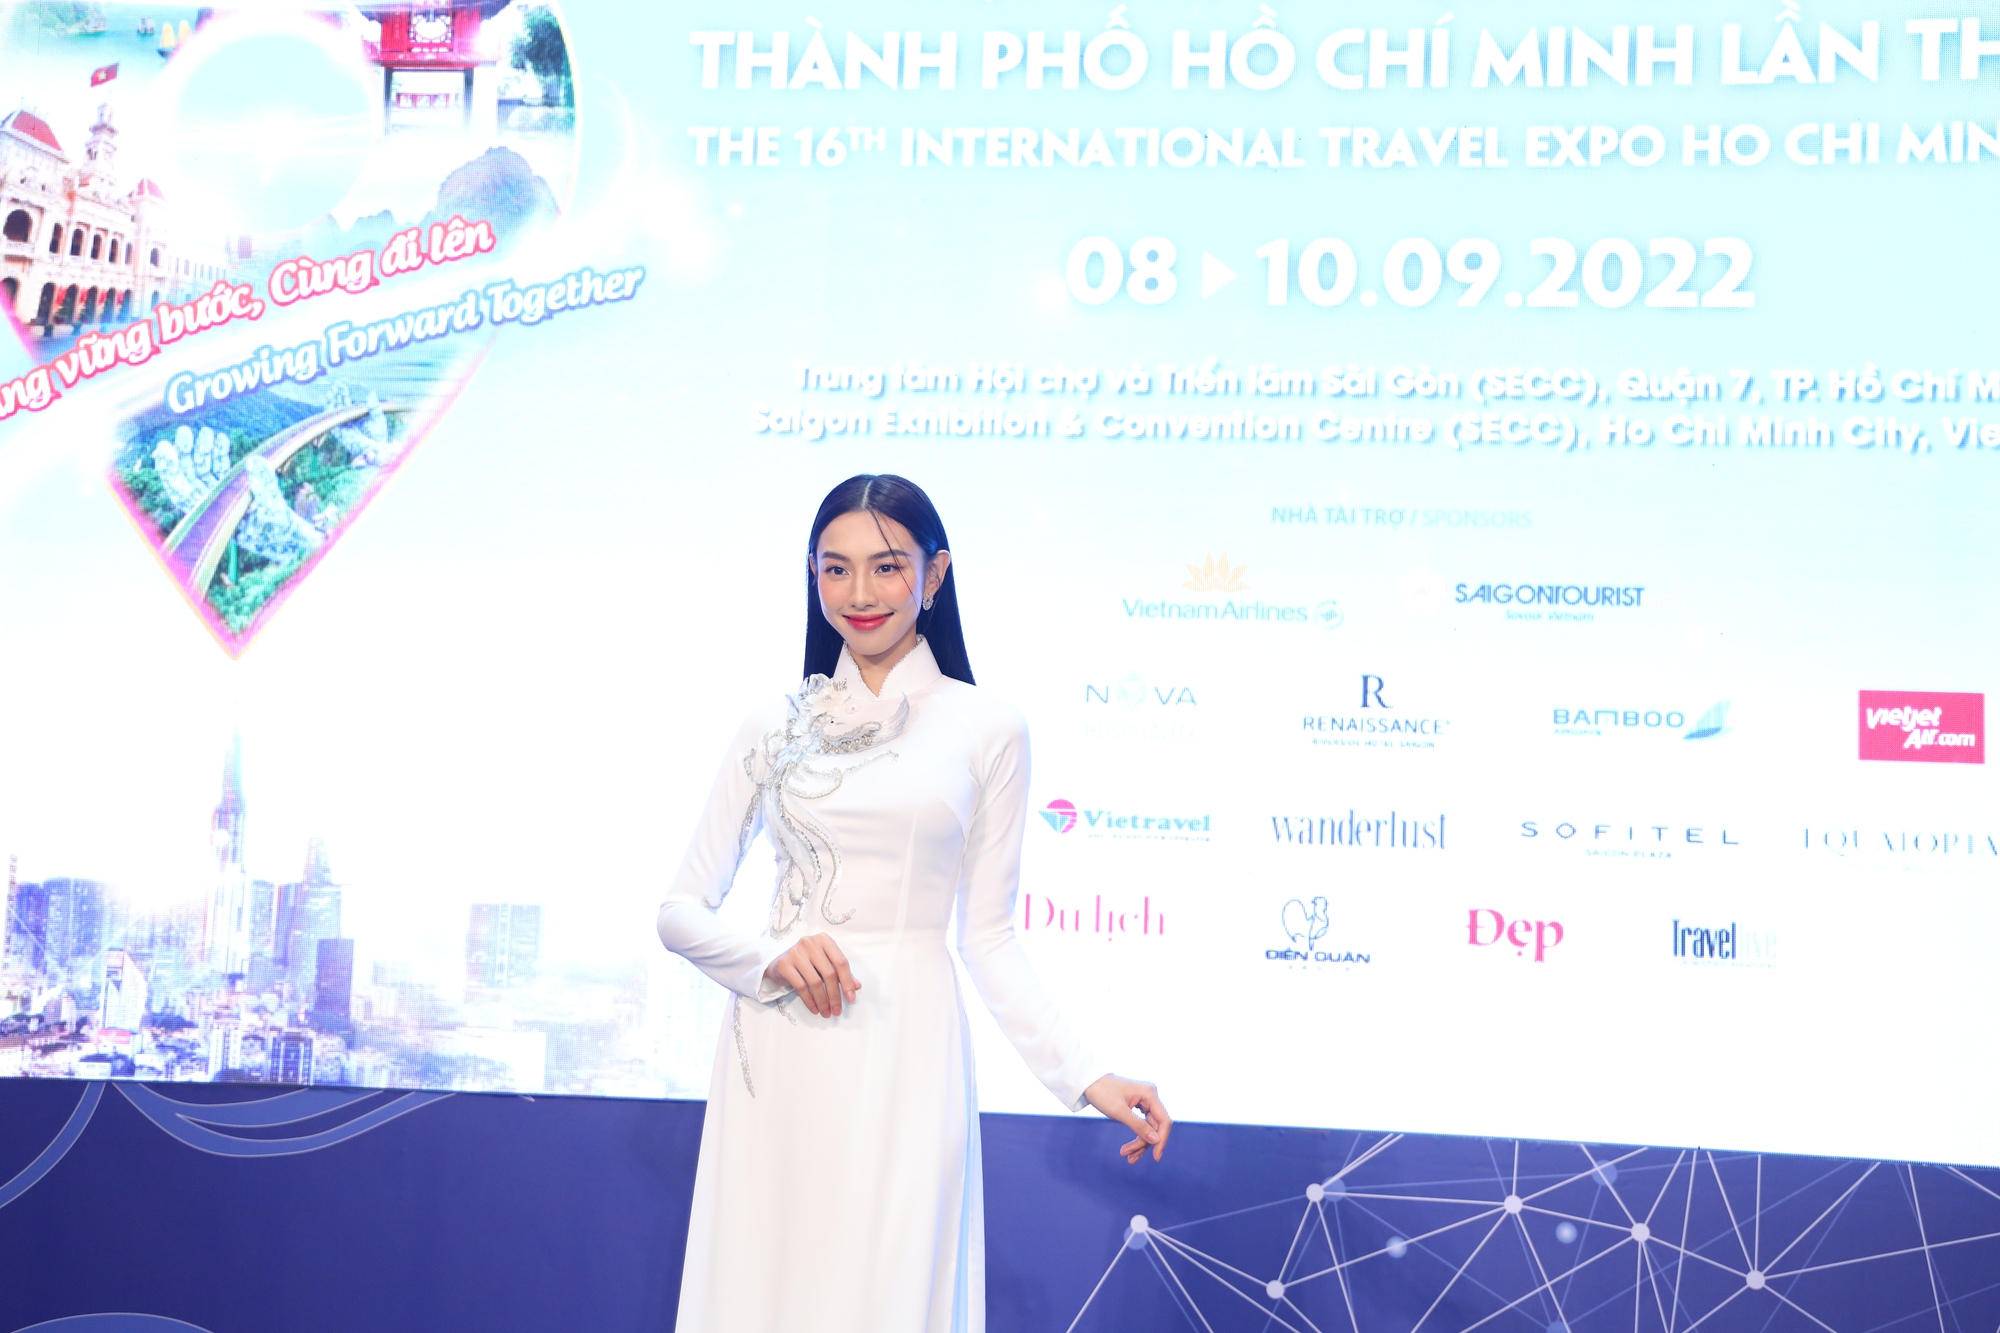 Hoa hậu Nguyễn Thúc Thùy Tiên là Đại sứ truyền thông Hội chợ Du lịch Quốc tế TP HCM 2022 - Ảnh 1.